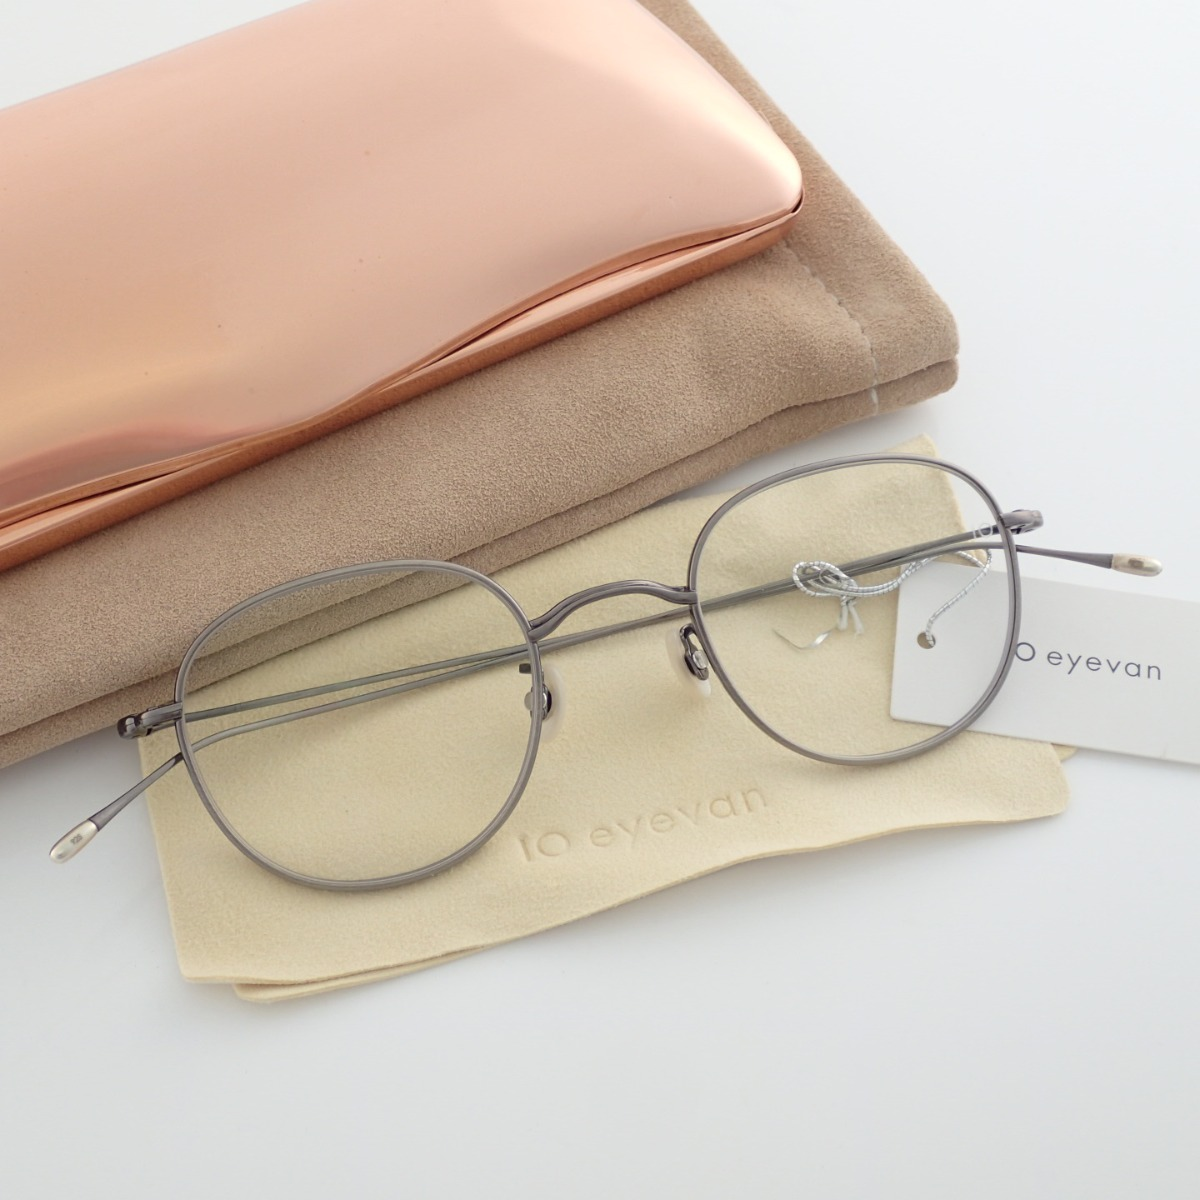 アイヴァン7285のメガネの10-eyevan no.1 c.5S メタルフレーム メガネの買取価格・実績 2020年6月30日公開情報